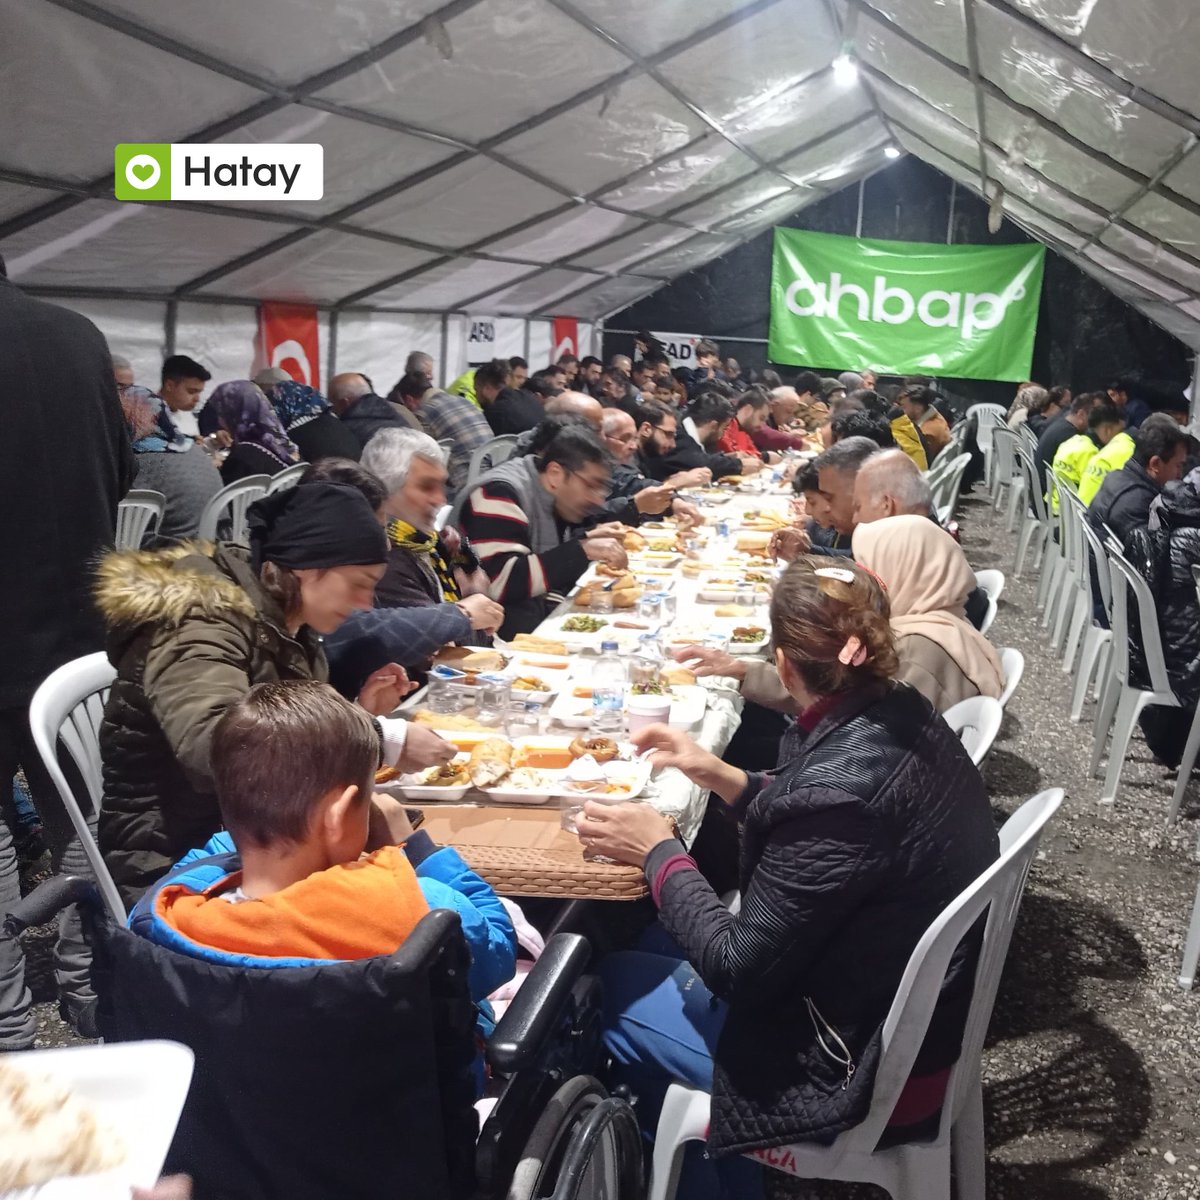 Hatay'da, Ramazan ayı süresince her akşam MKÜ Kampüs girişindeki çadırımızda 500 kişilik iftar yemeği sunmaktan mutluluk duyuyoruz. 💚